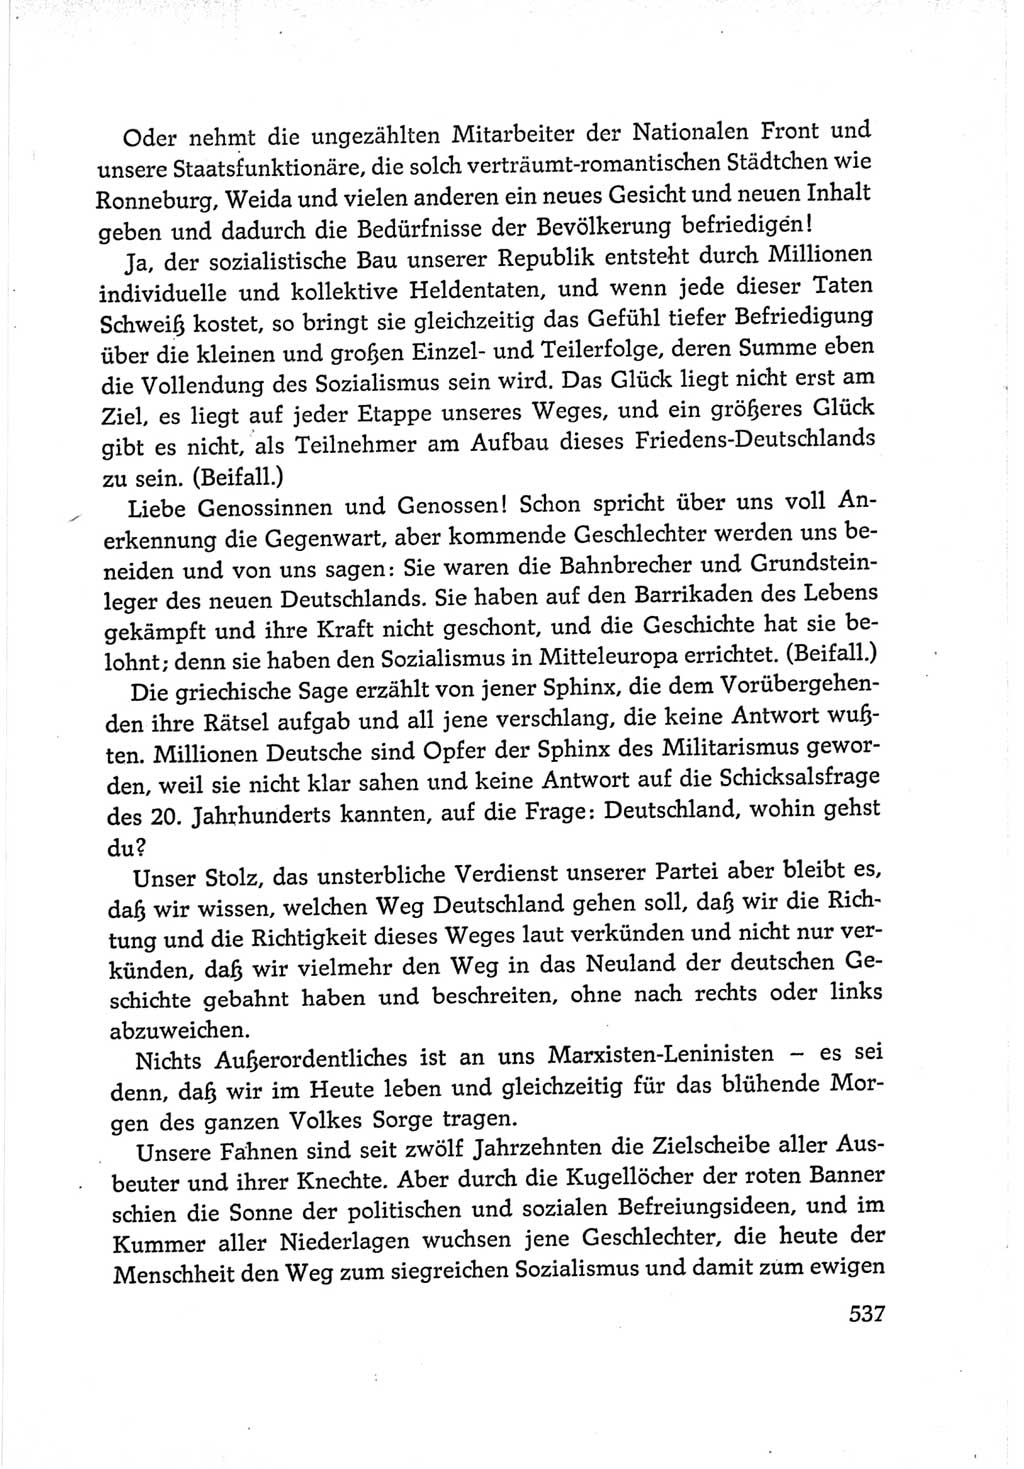 Protokoll der Verhandlungen des Ⅵ. Parteitages der Sozialistischen Einheitspartei Deutschlands (SED) [Deutsche Demokratische Republik (DDR)] 1963, Band Ⅰ, Seite 537 (Prot. Verh. Ⅵ. PT SED DDR 1963, Bd. Ⅰ, S. 537)